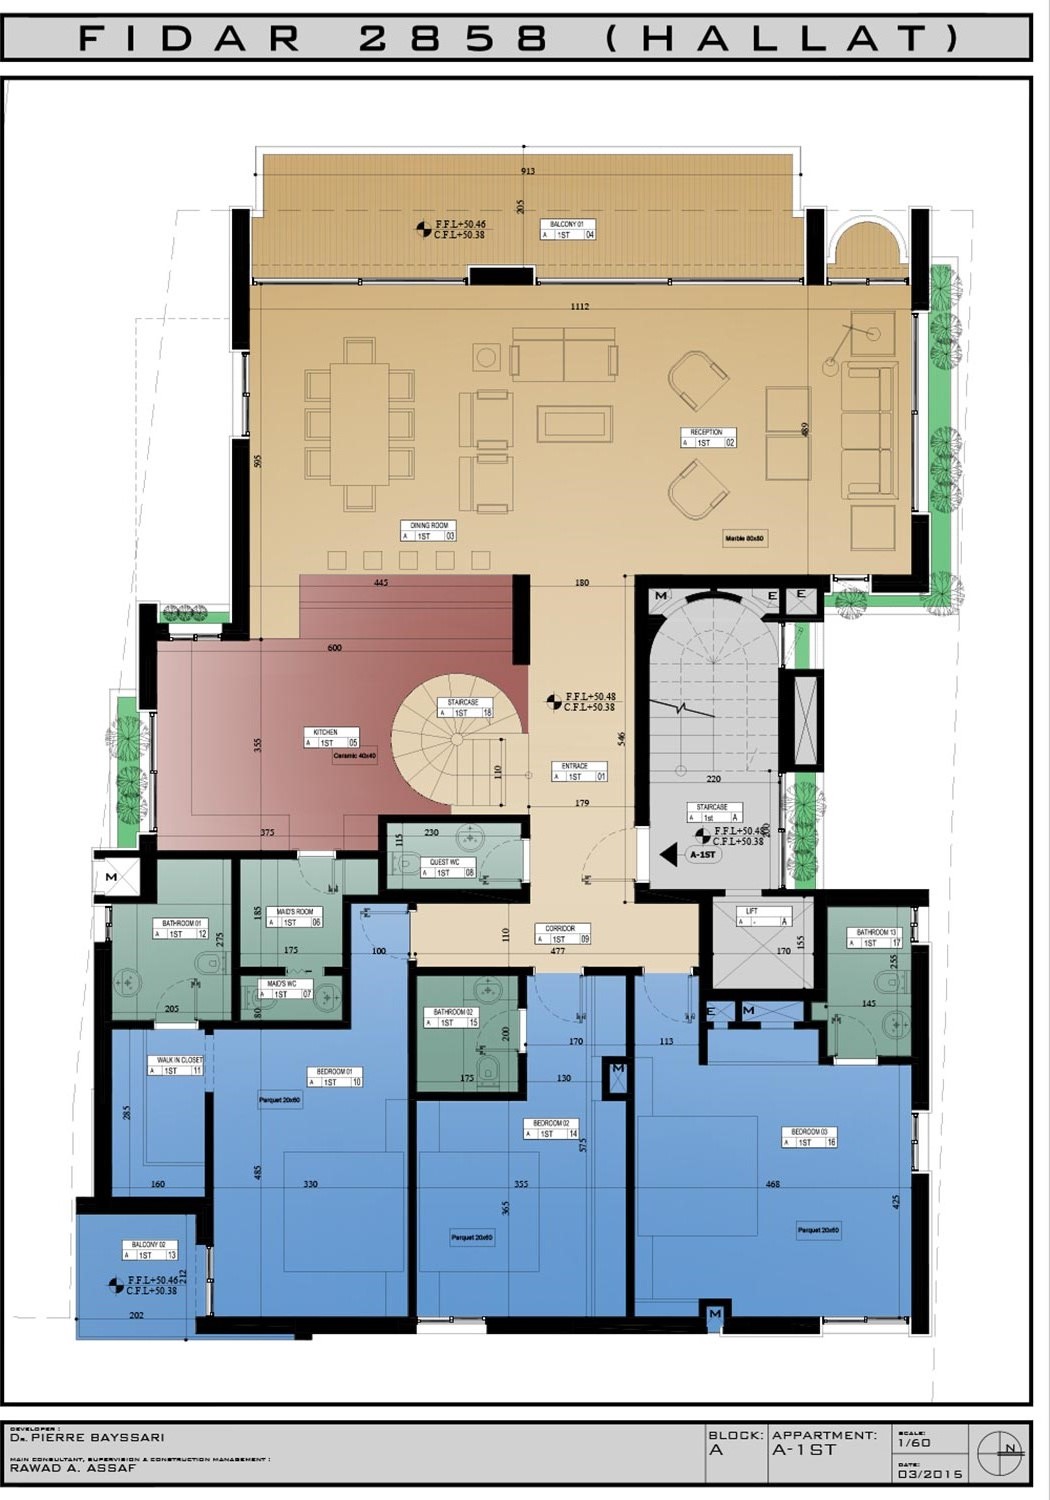 RL-2132 Duplex for Sale in Jbeil, Fidar - $ 857,000